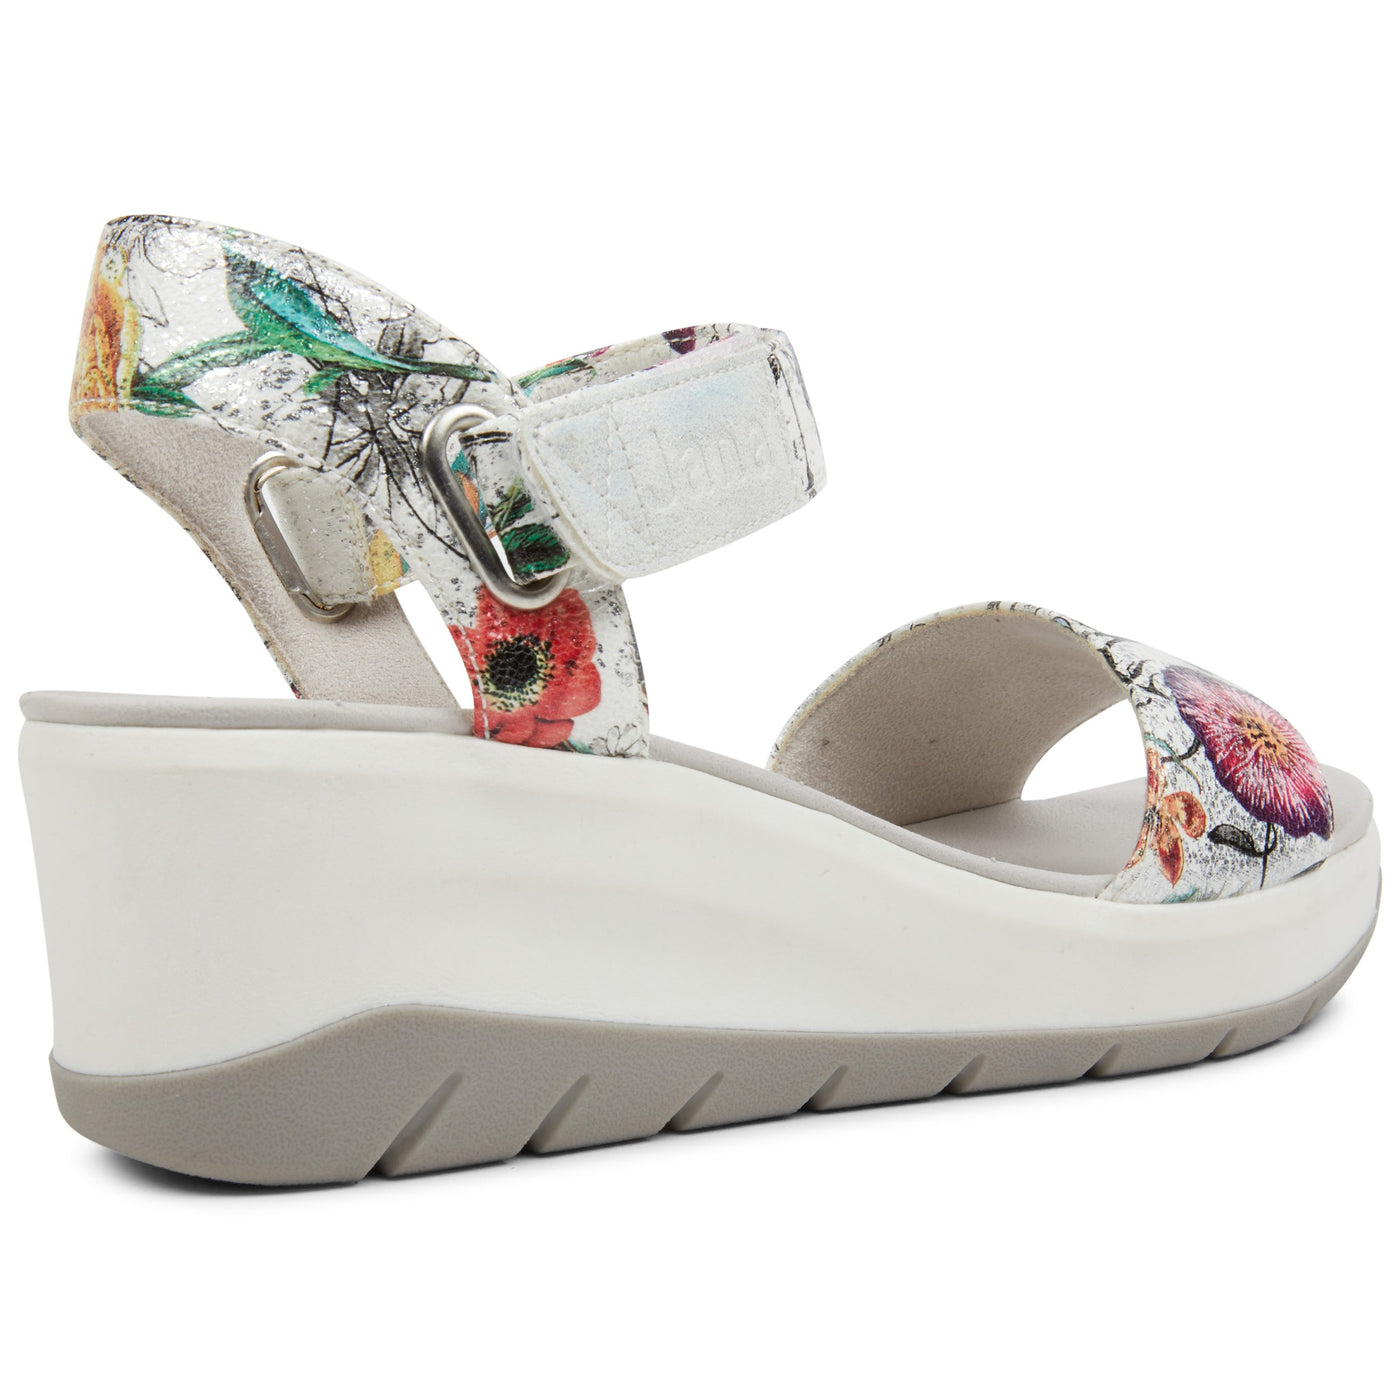 PLANET SHOES JORDIE WHITE FLORAL - Women Sandals - Collective Shoes 